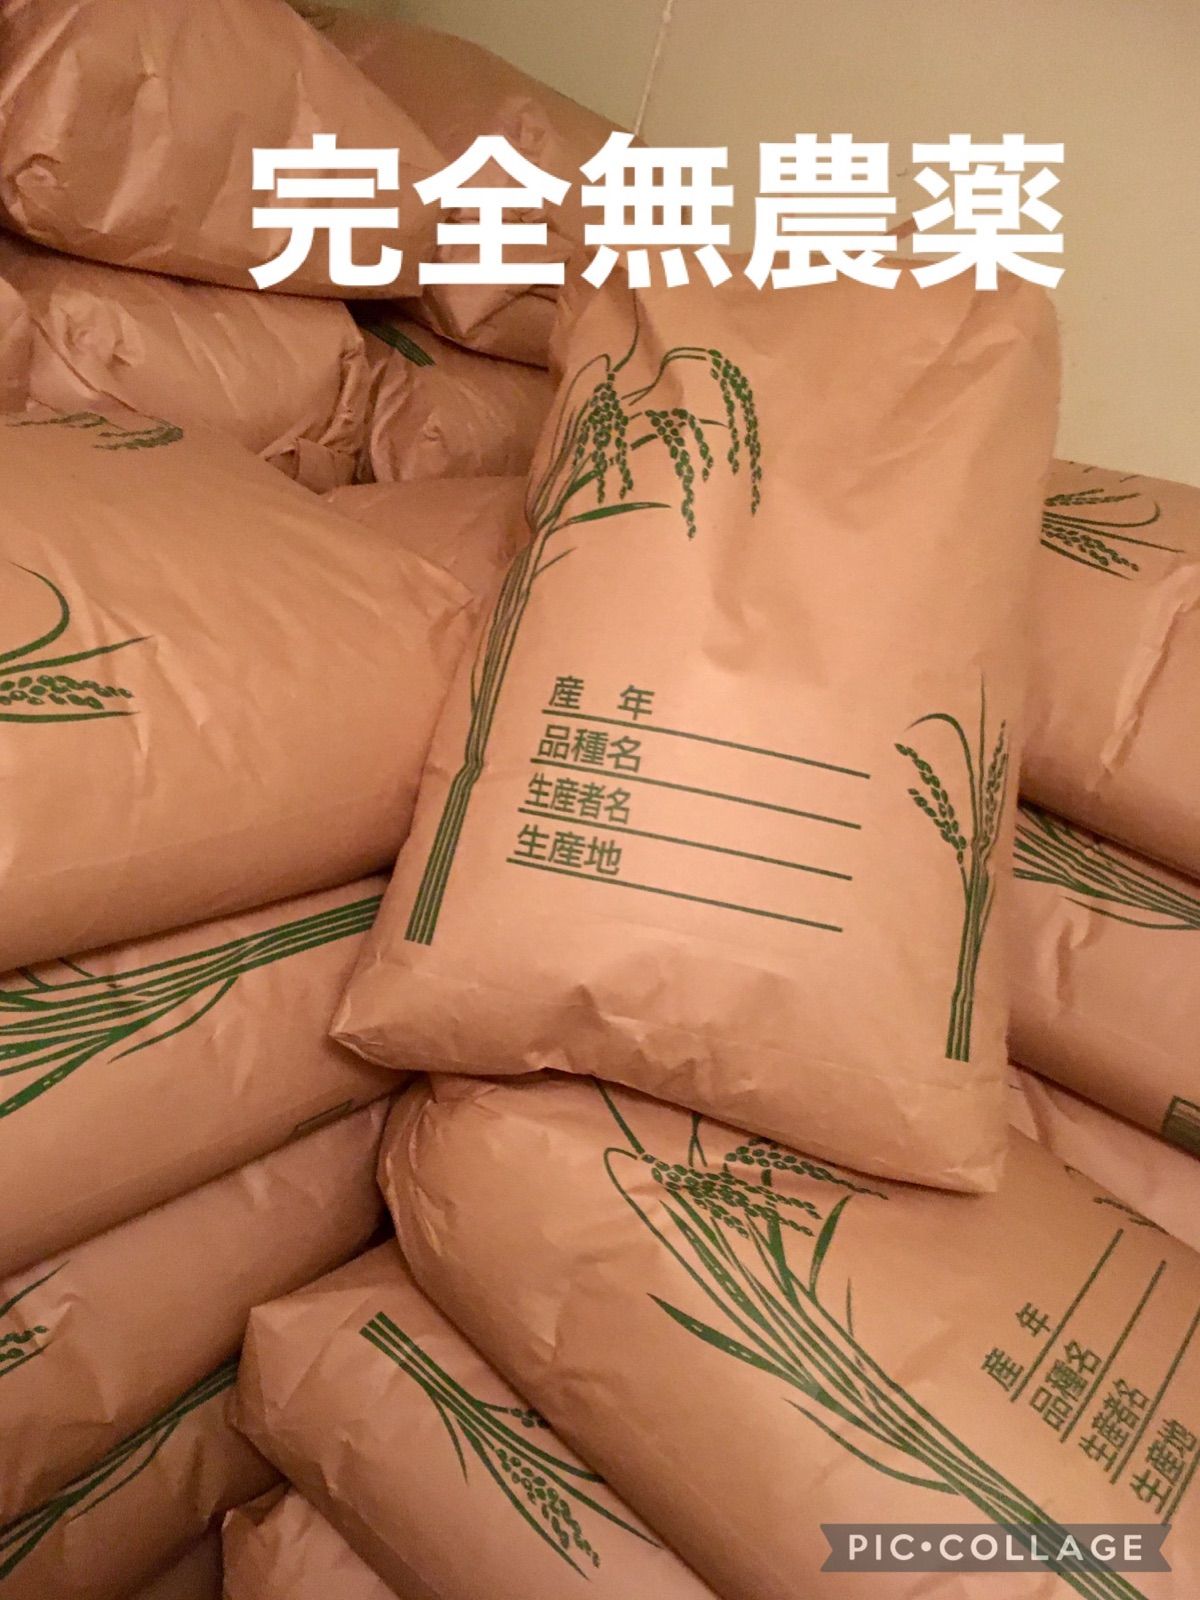 にこまる 10kg 農薬不使用 玄米 日本国産 農家直送 美容健康 即日配送